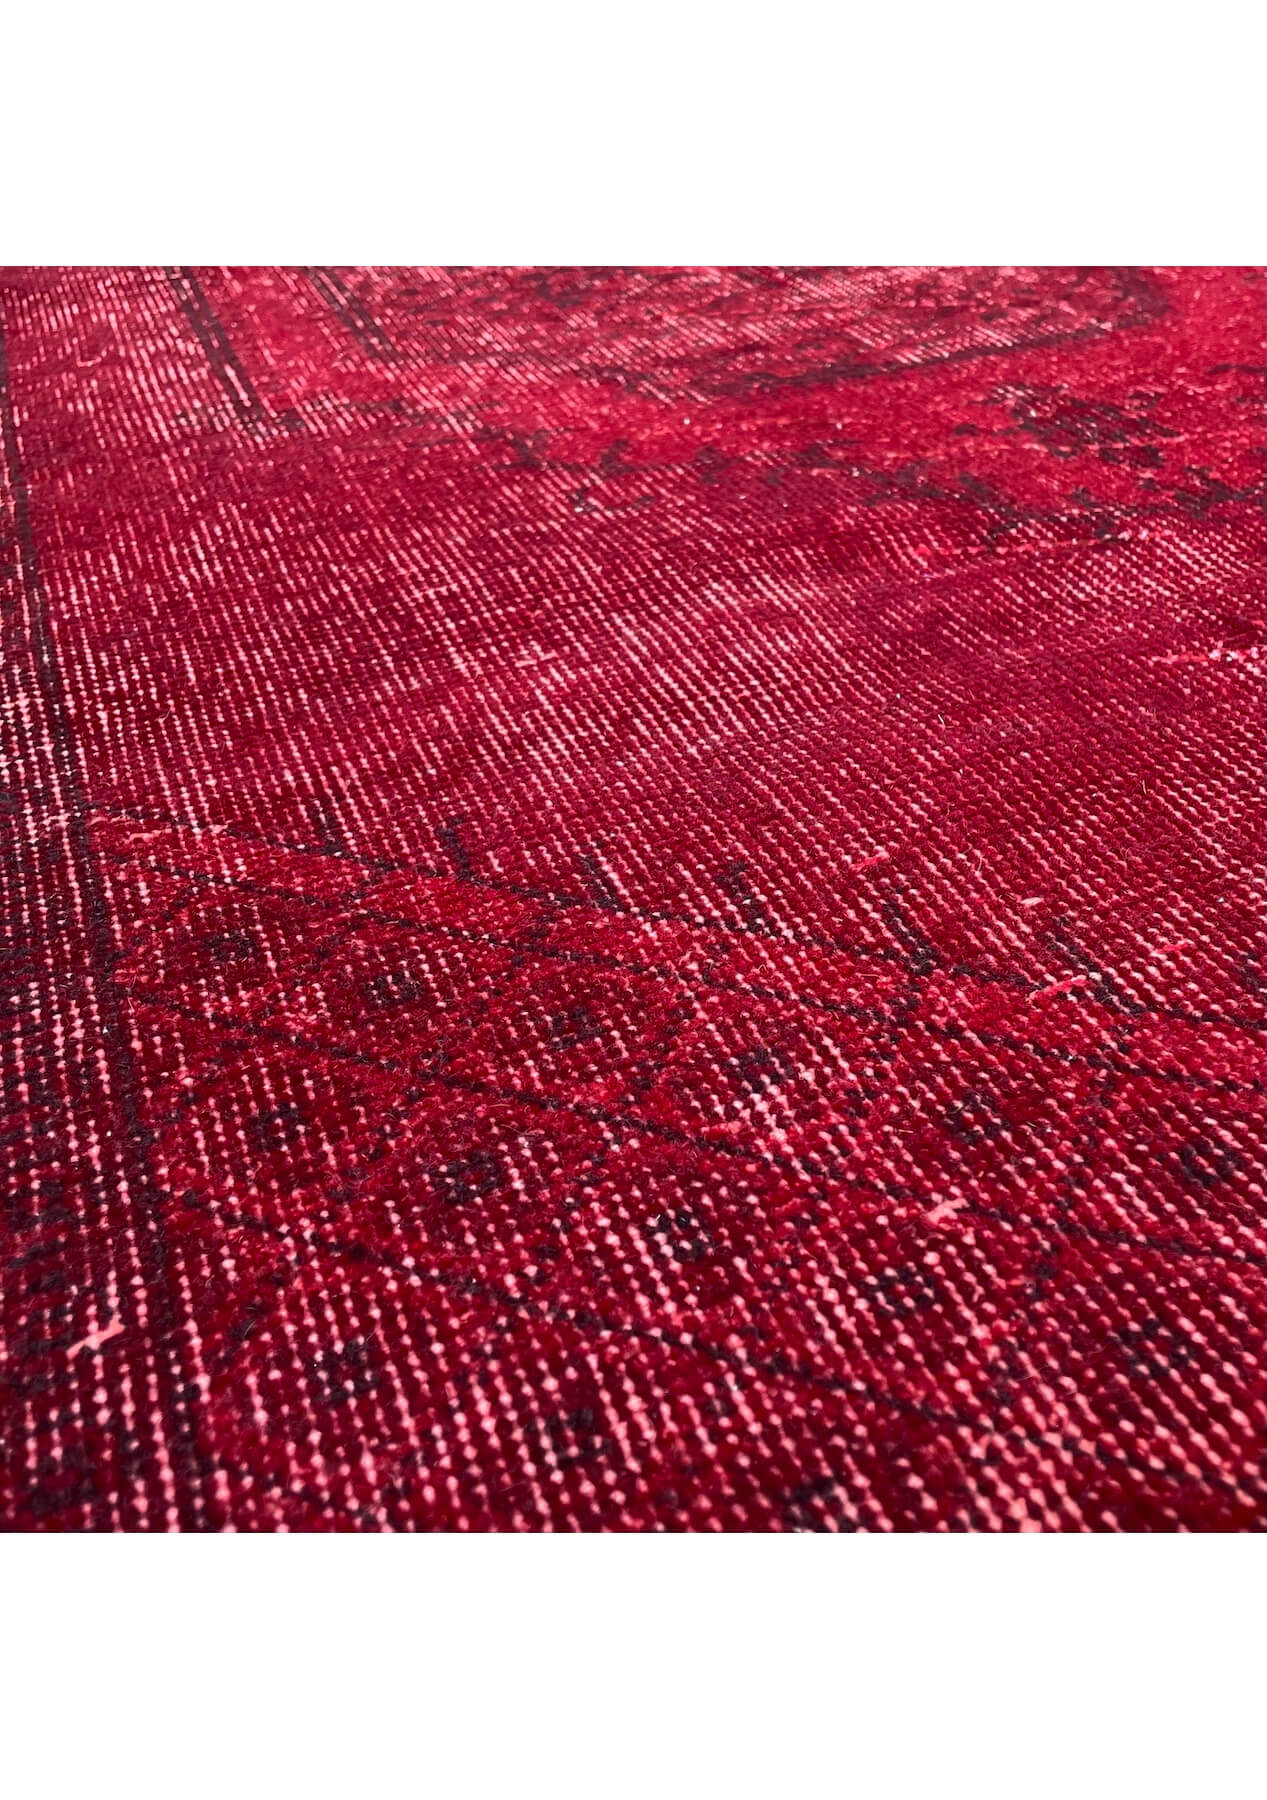 Perla - Vintage Red Overdyed Rug - kudenrugs